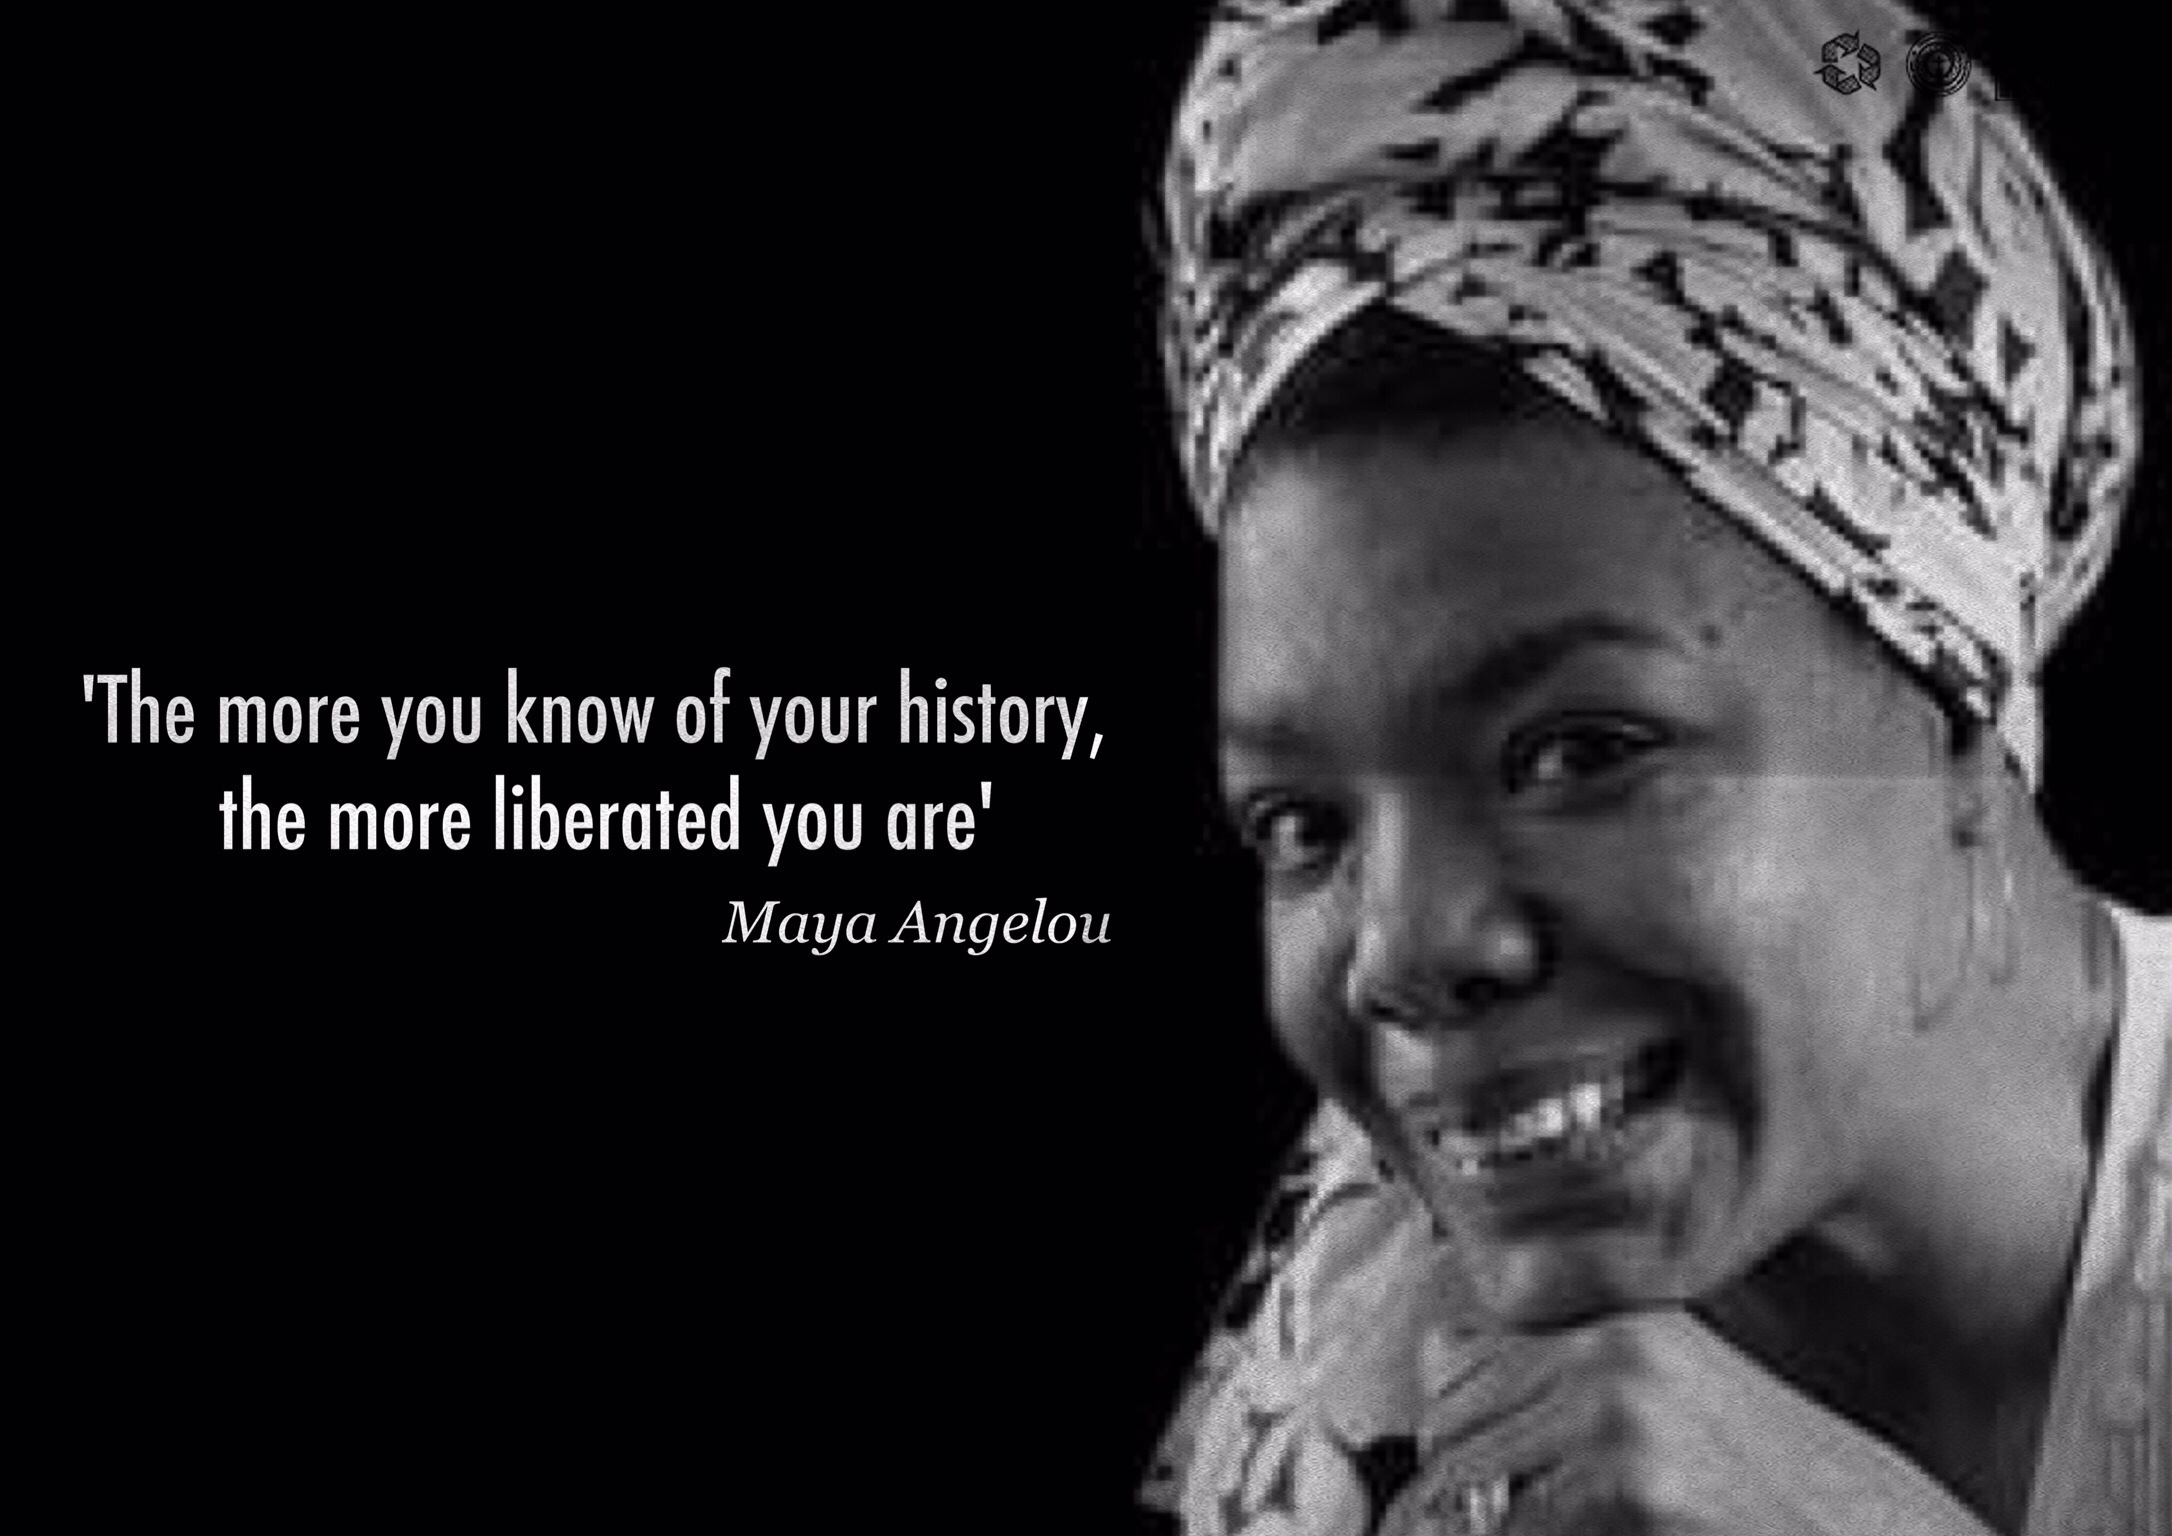 Maya Angelou History  quote  poster jivespin